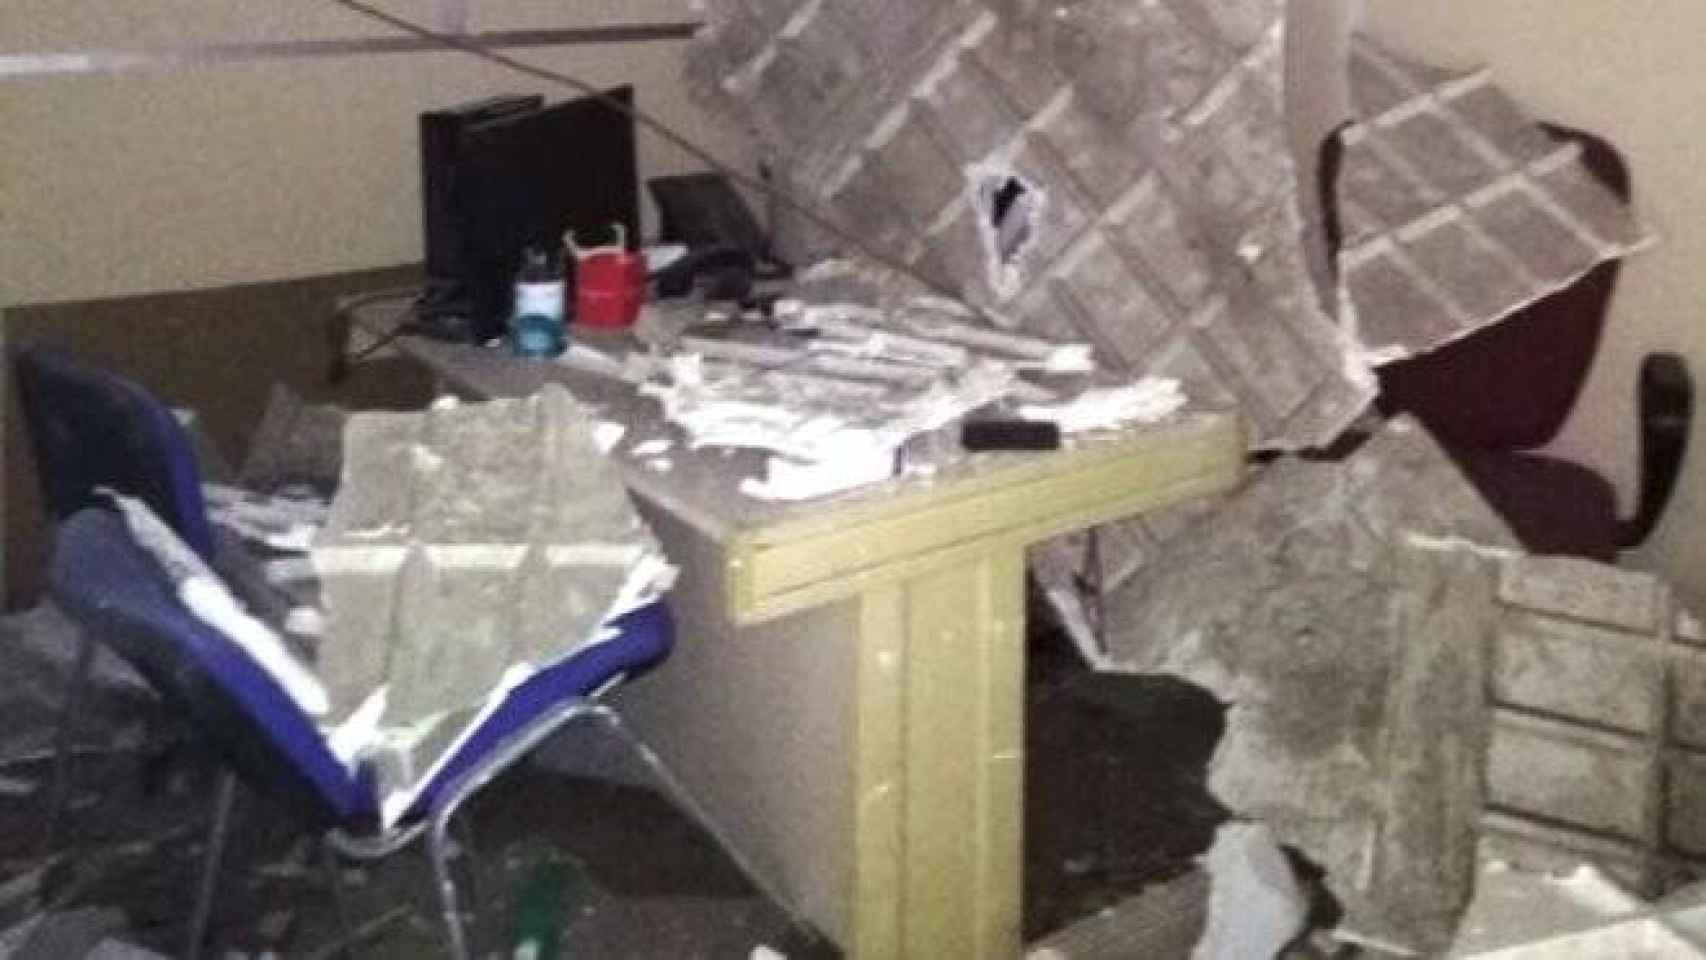 la caída del techo de la consulta ha destrozado el mobiliario